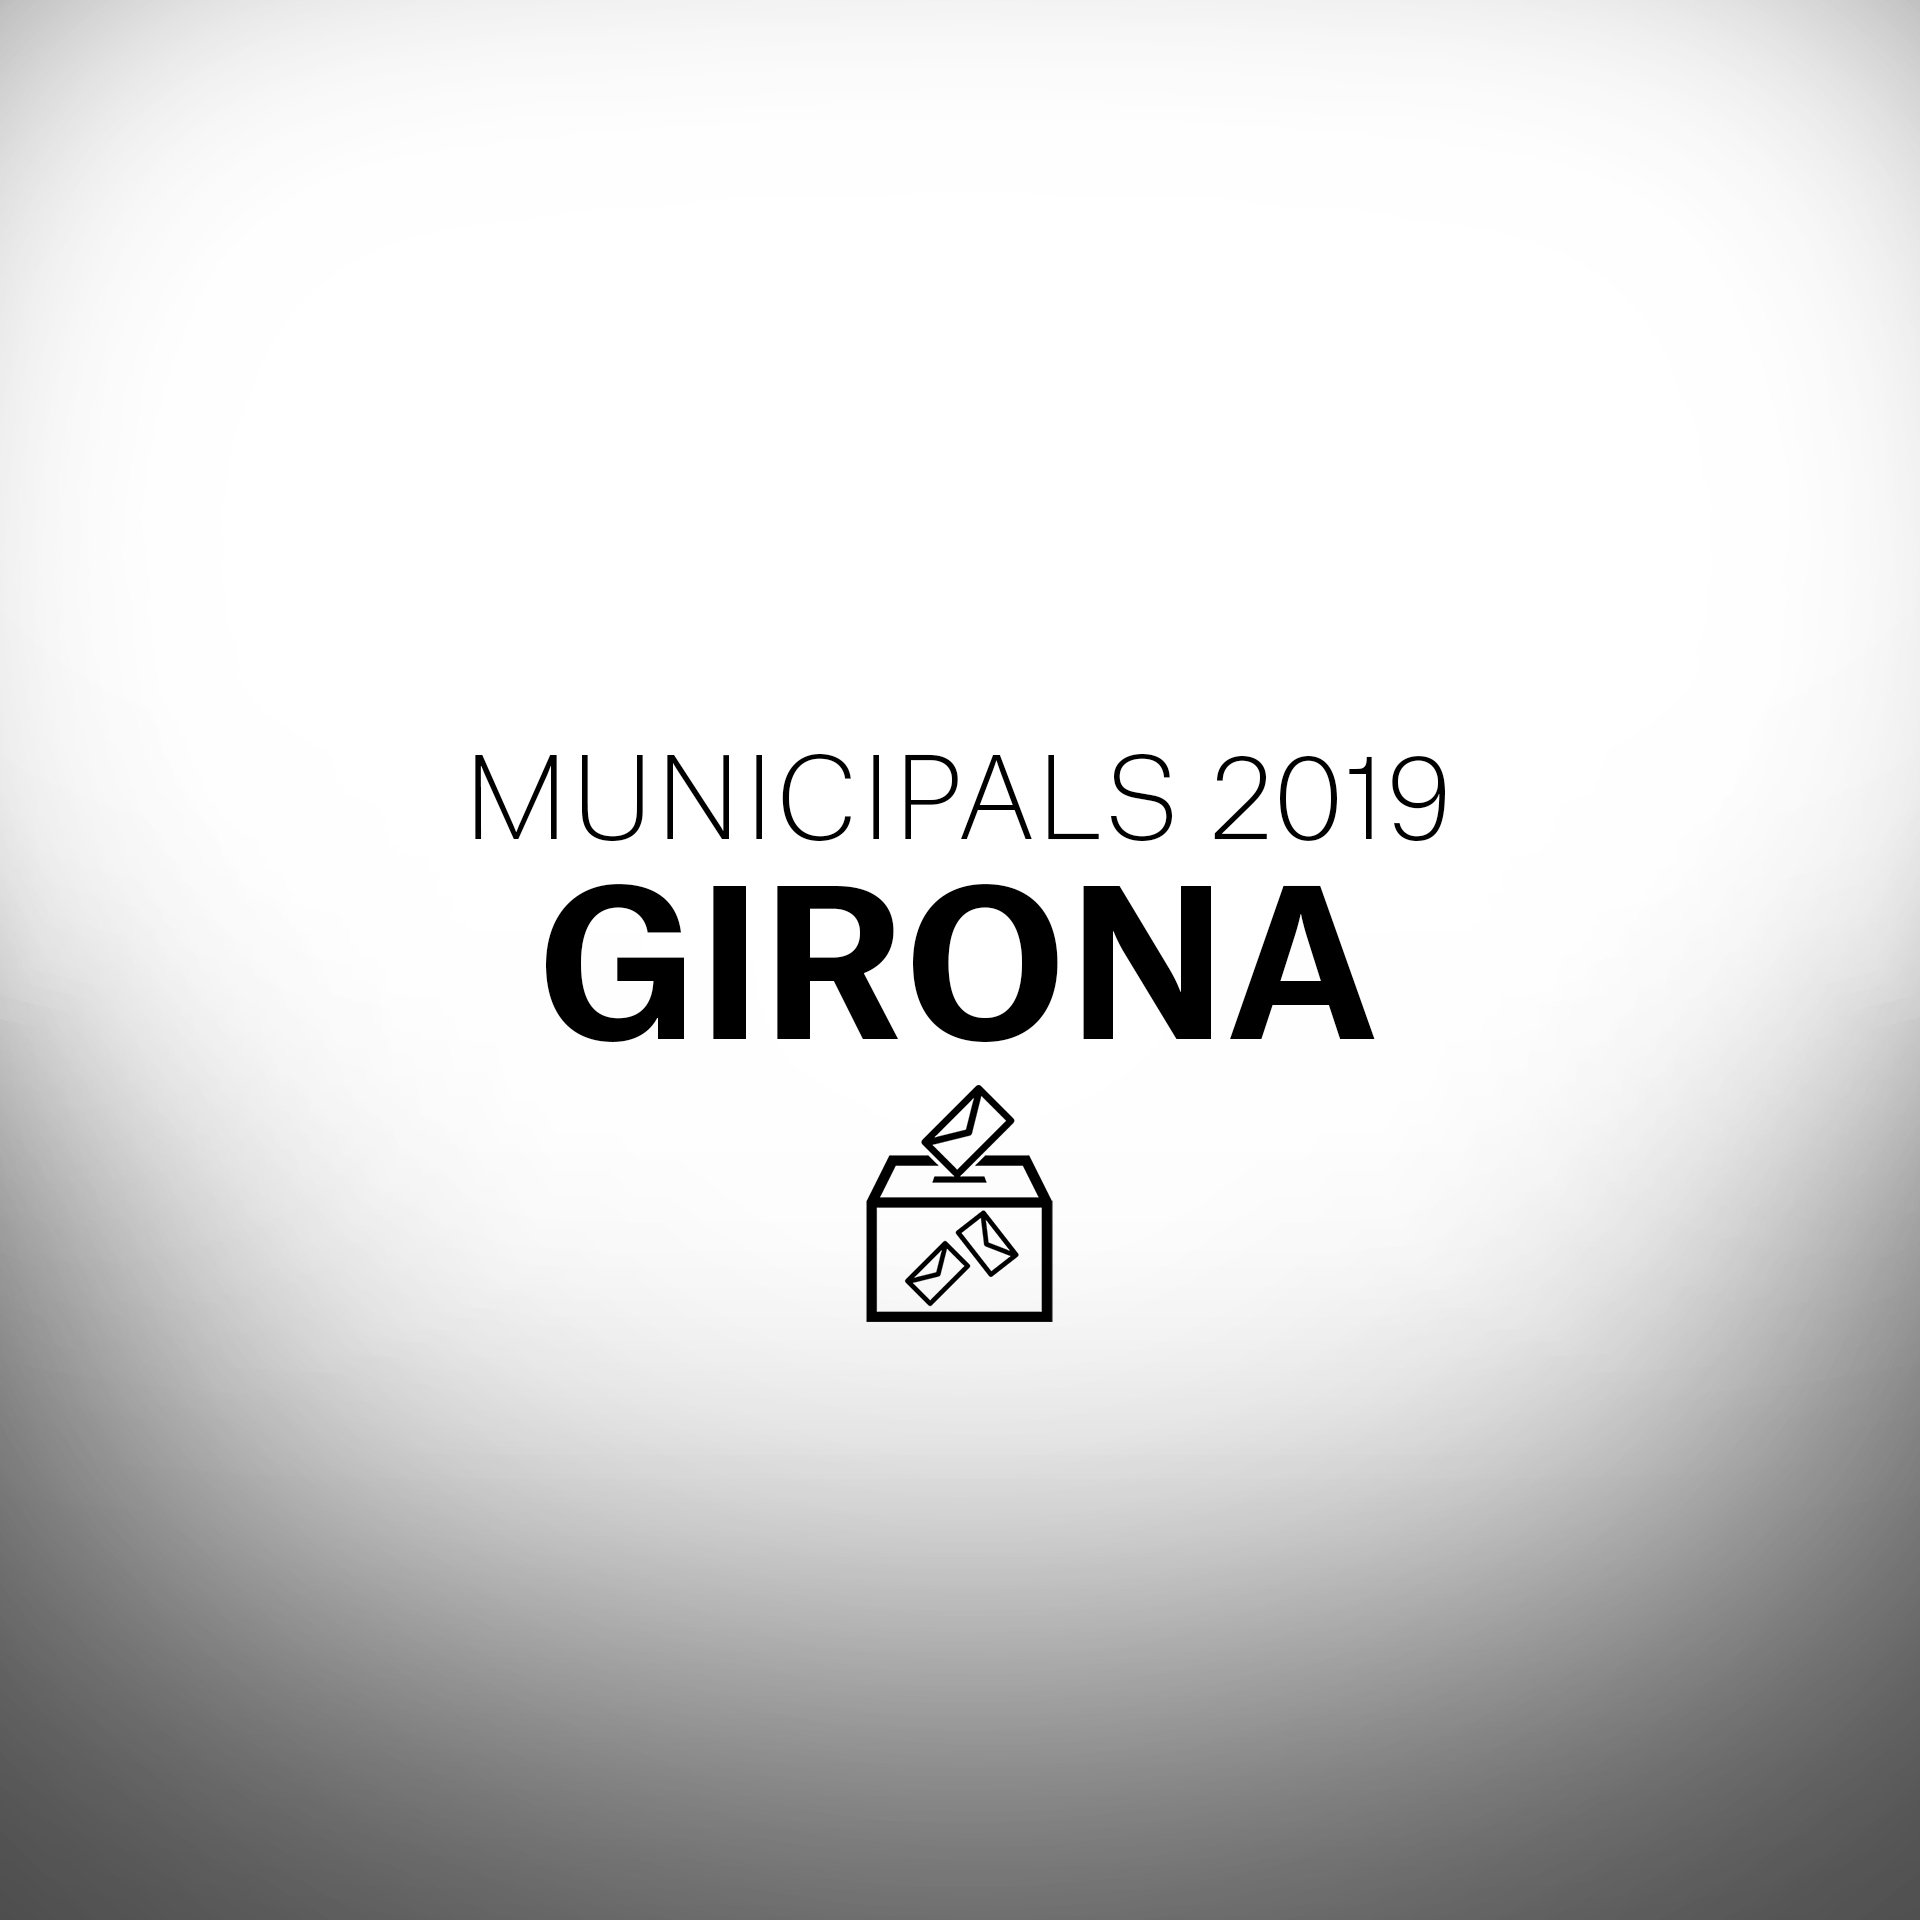 ¿Qué pasará en las elecciones municipales en Girona?